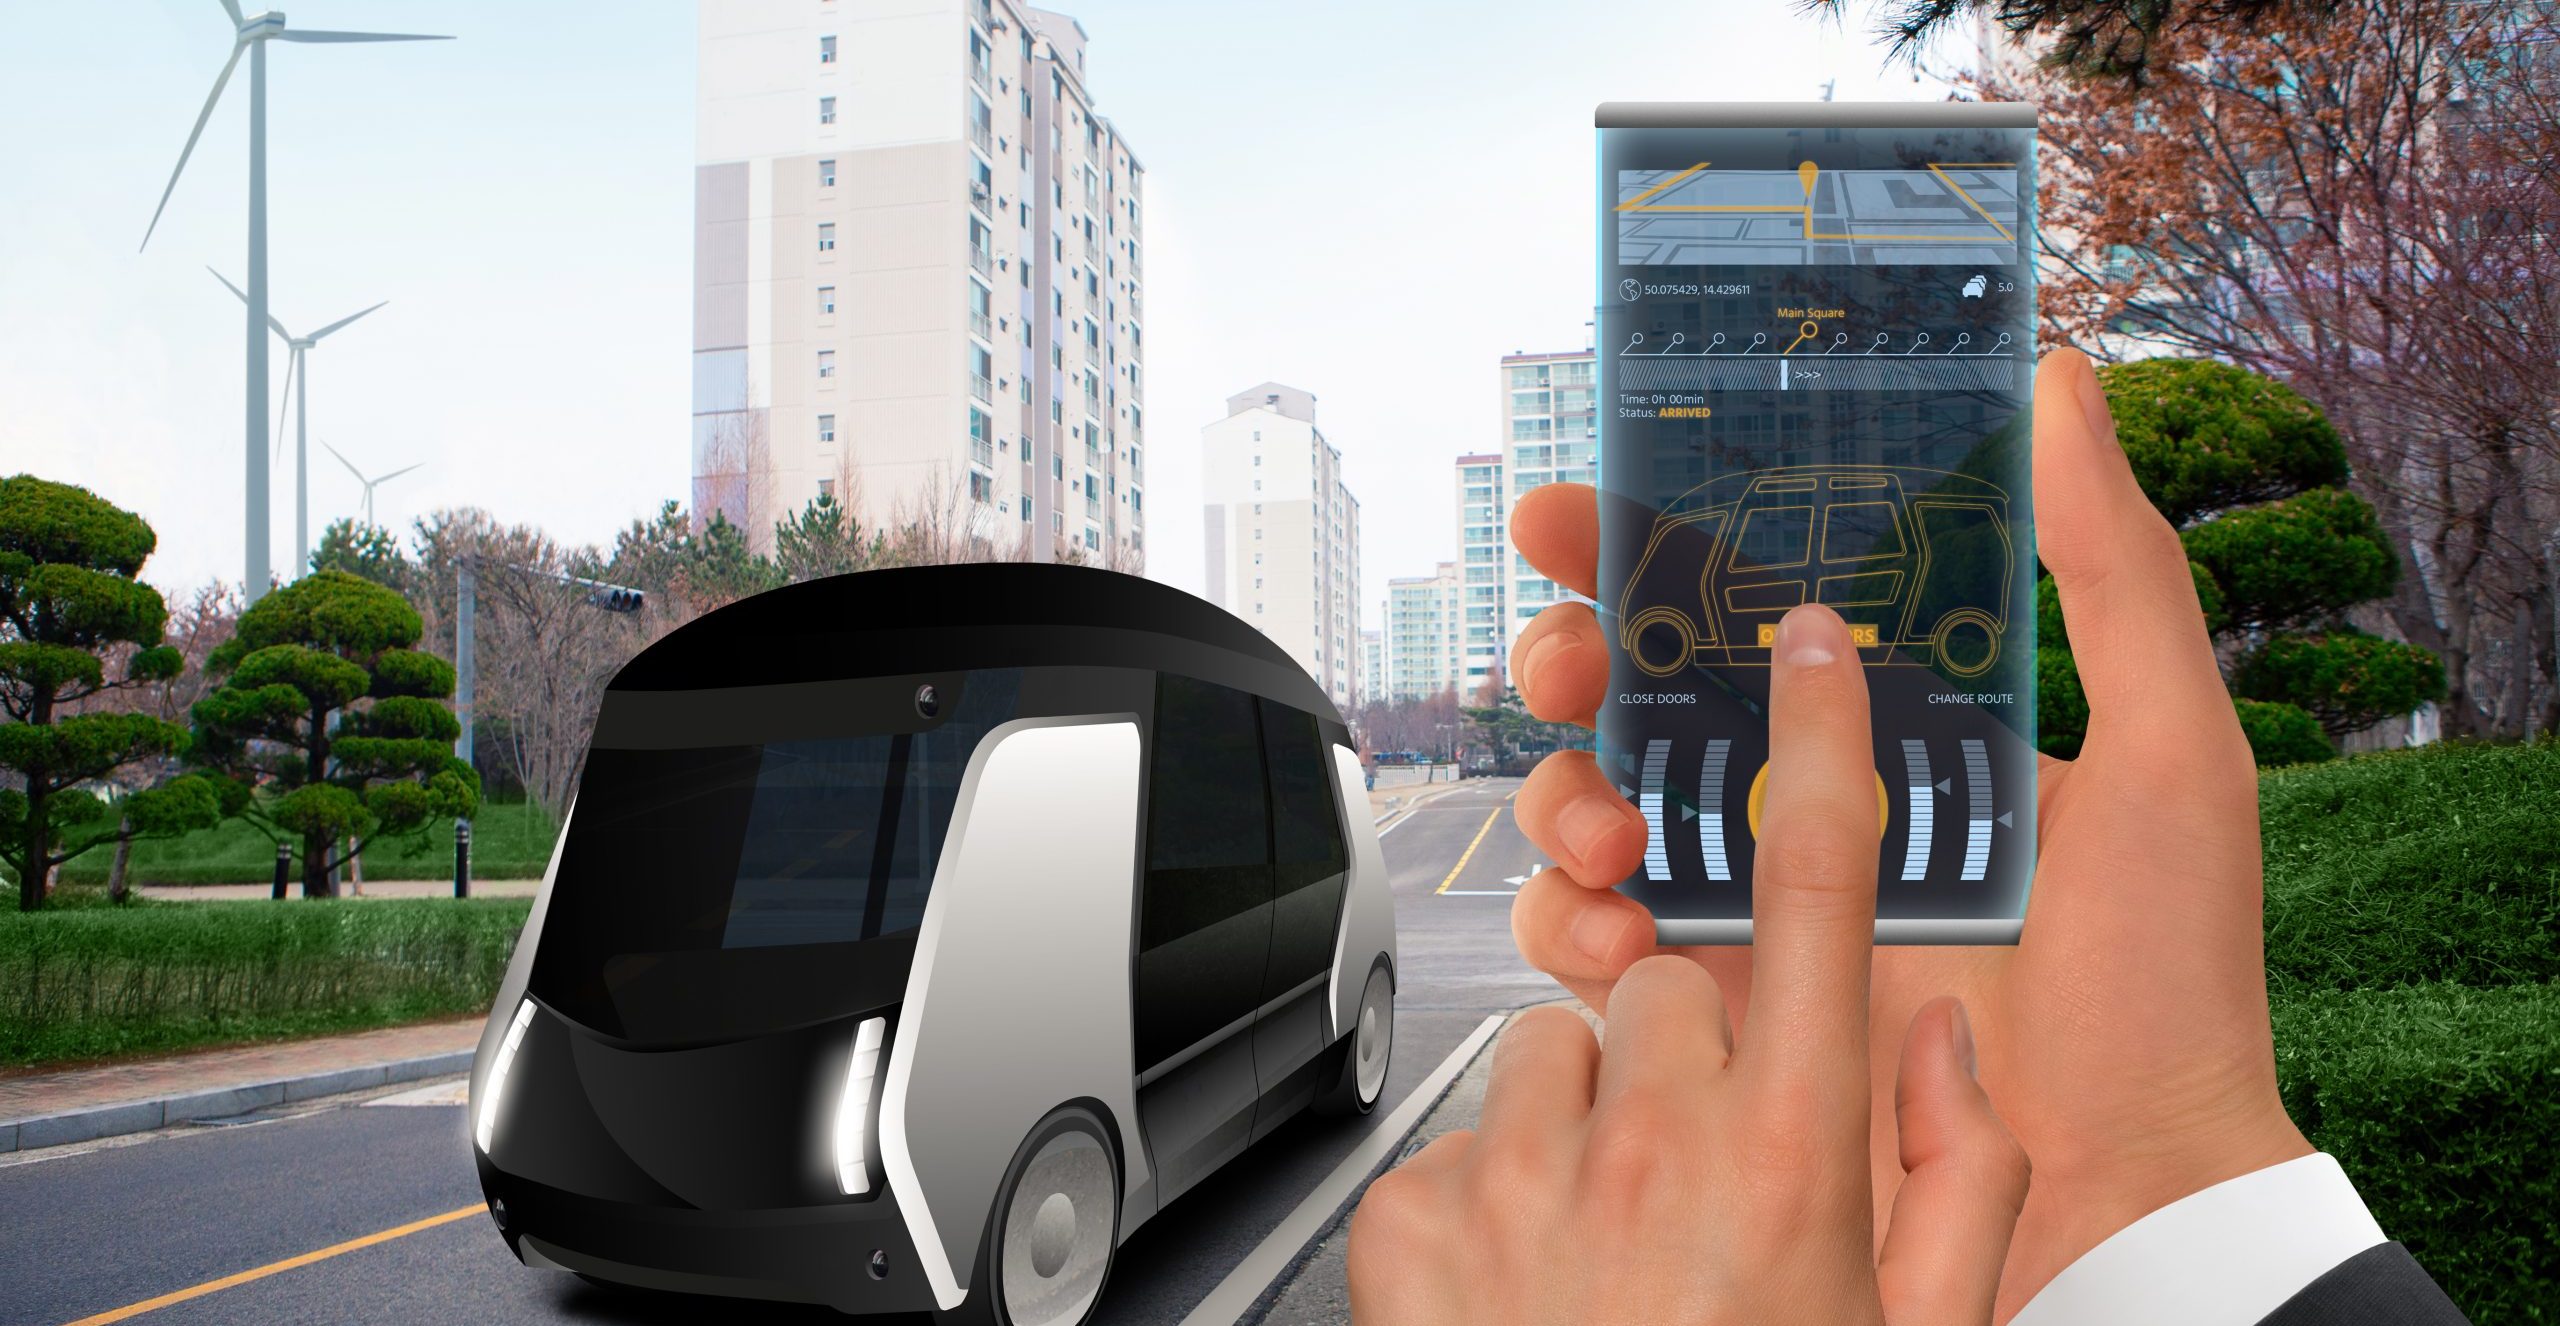 Steuerung eines autonomen Busses über eine mobile App. Hand mit futuristischem Telefon auf einem Hintergrund eines selbstfahrenden Shuttles mit offenen Türen.